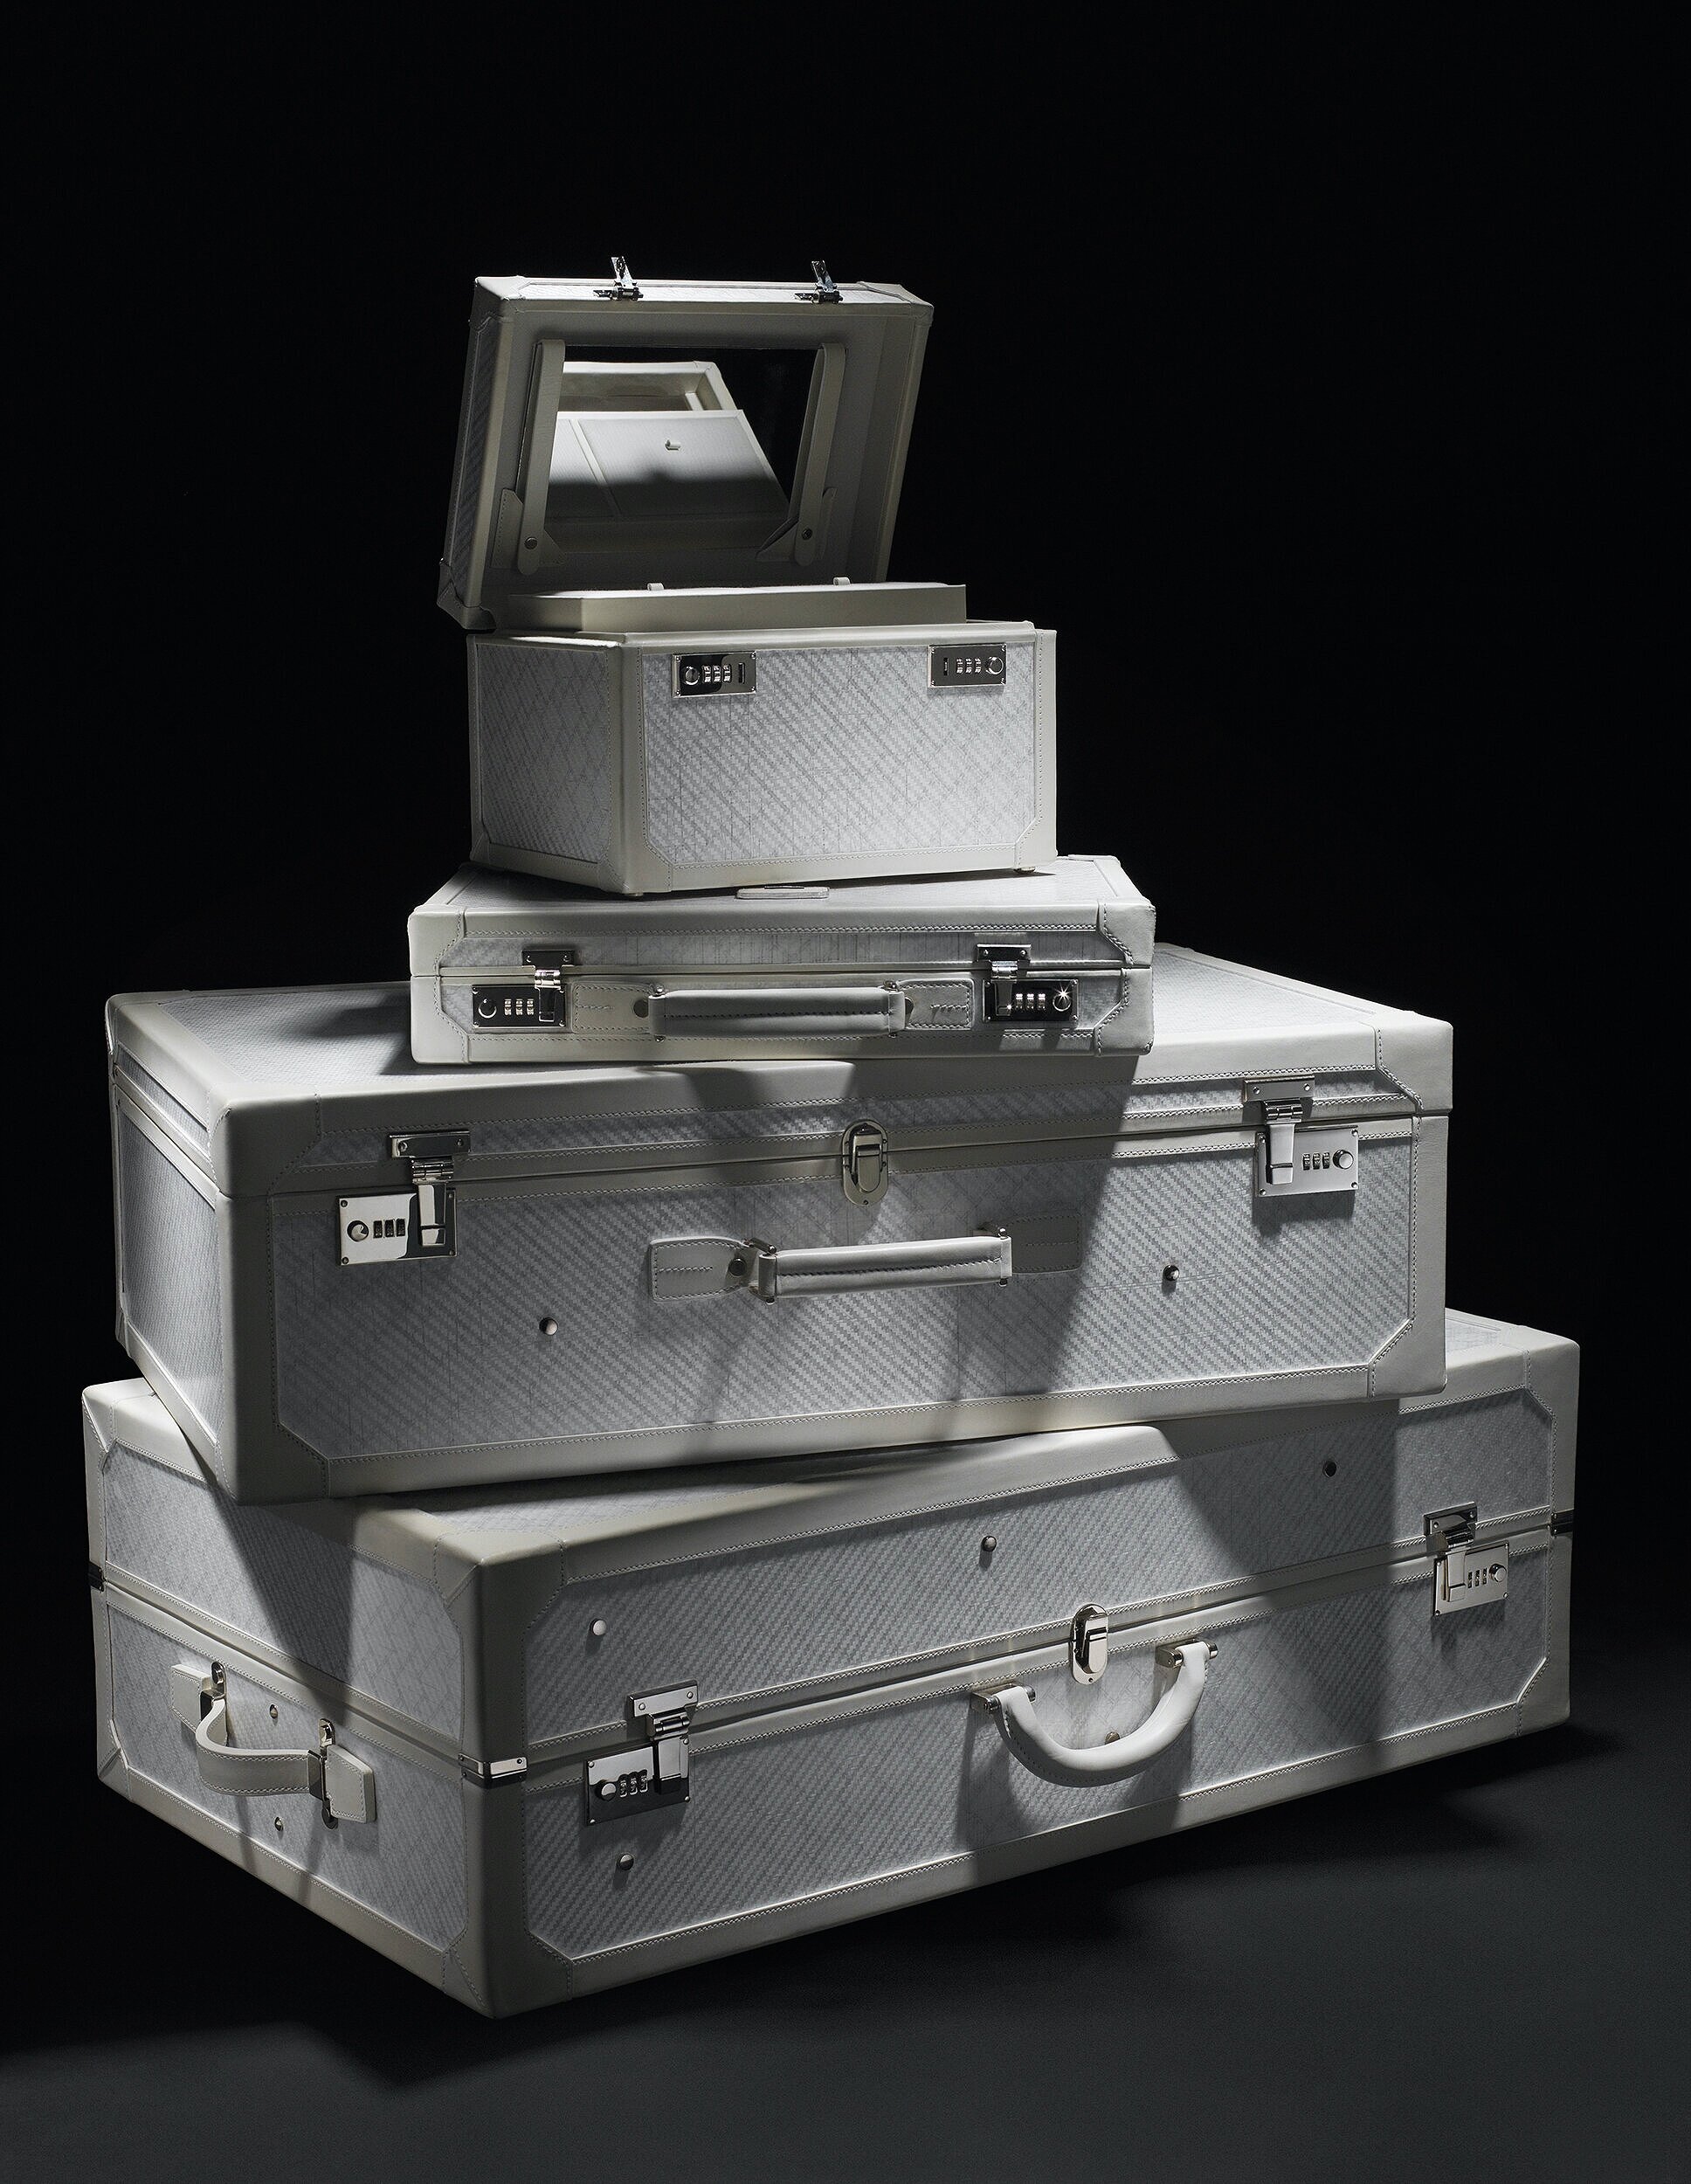  Tumi suitcases for Harrods magazine 